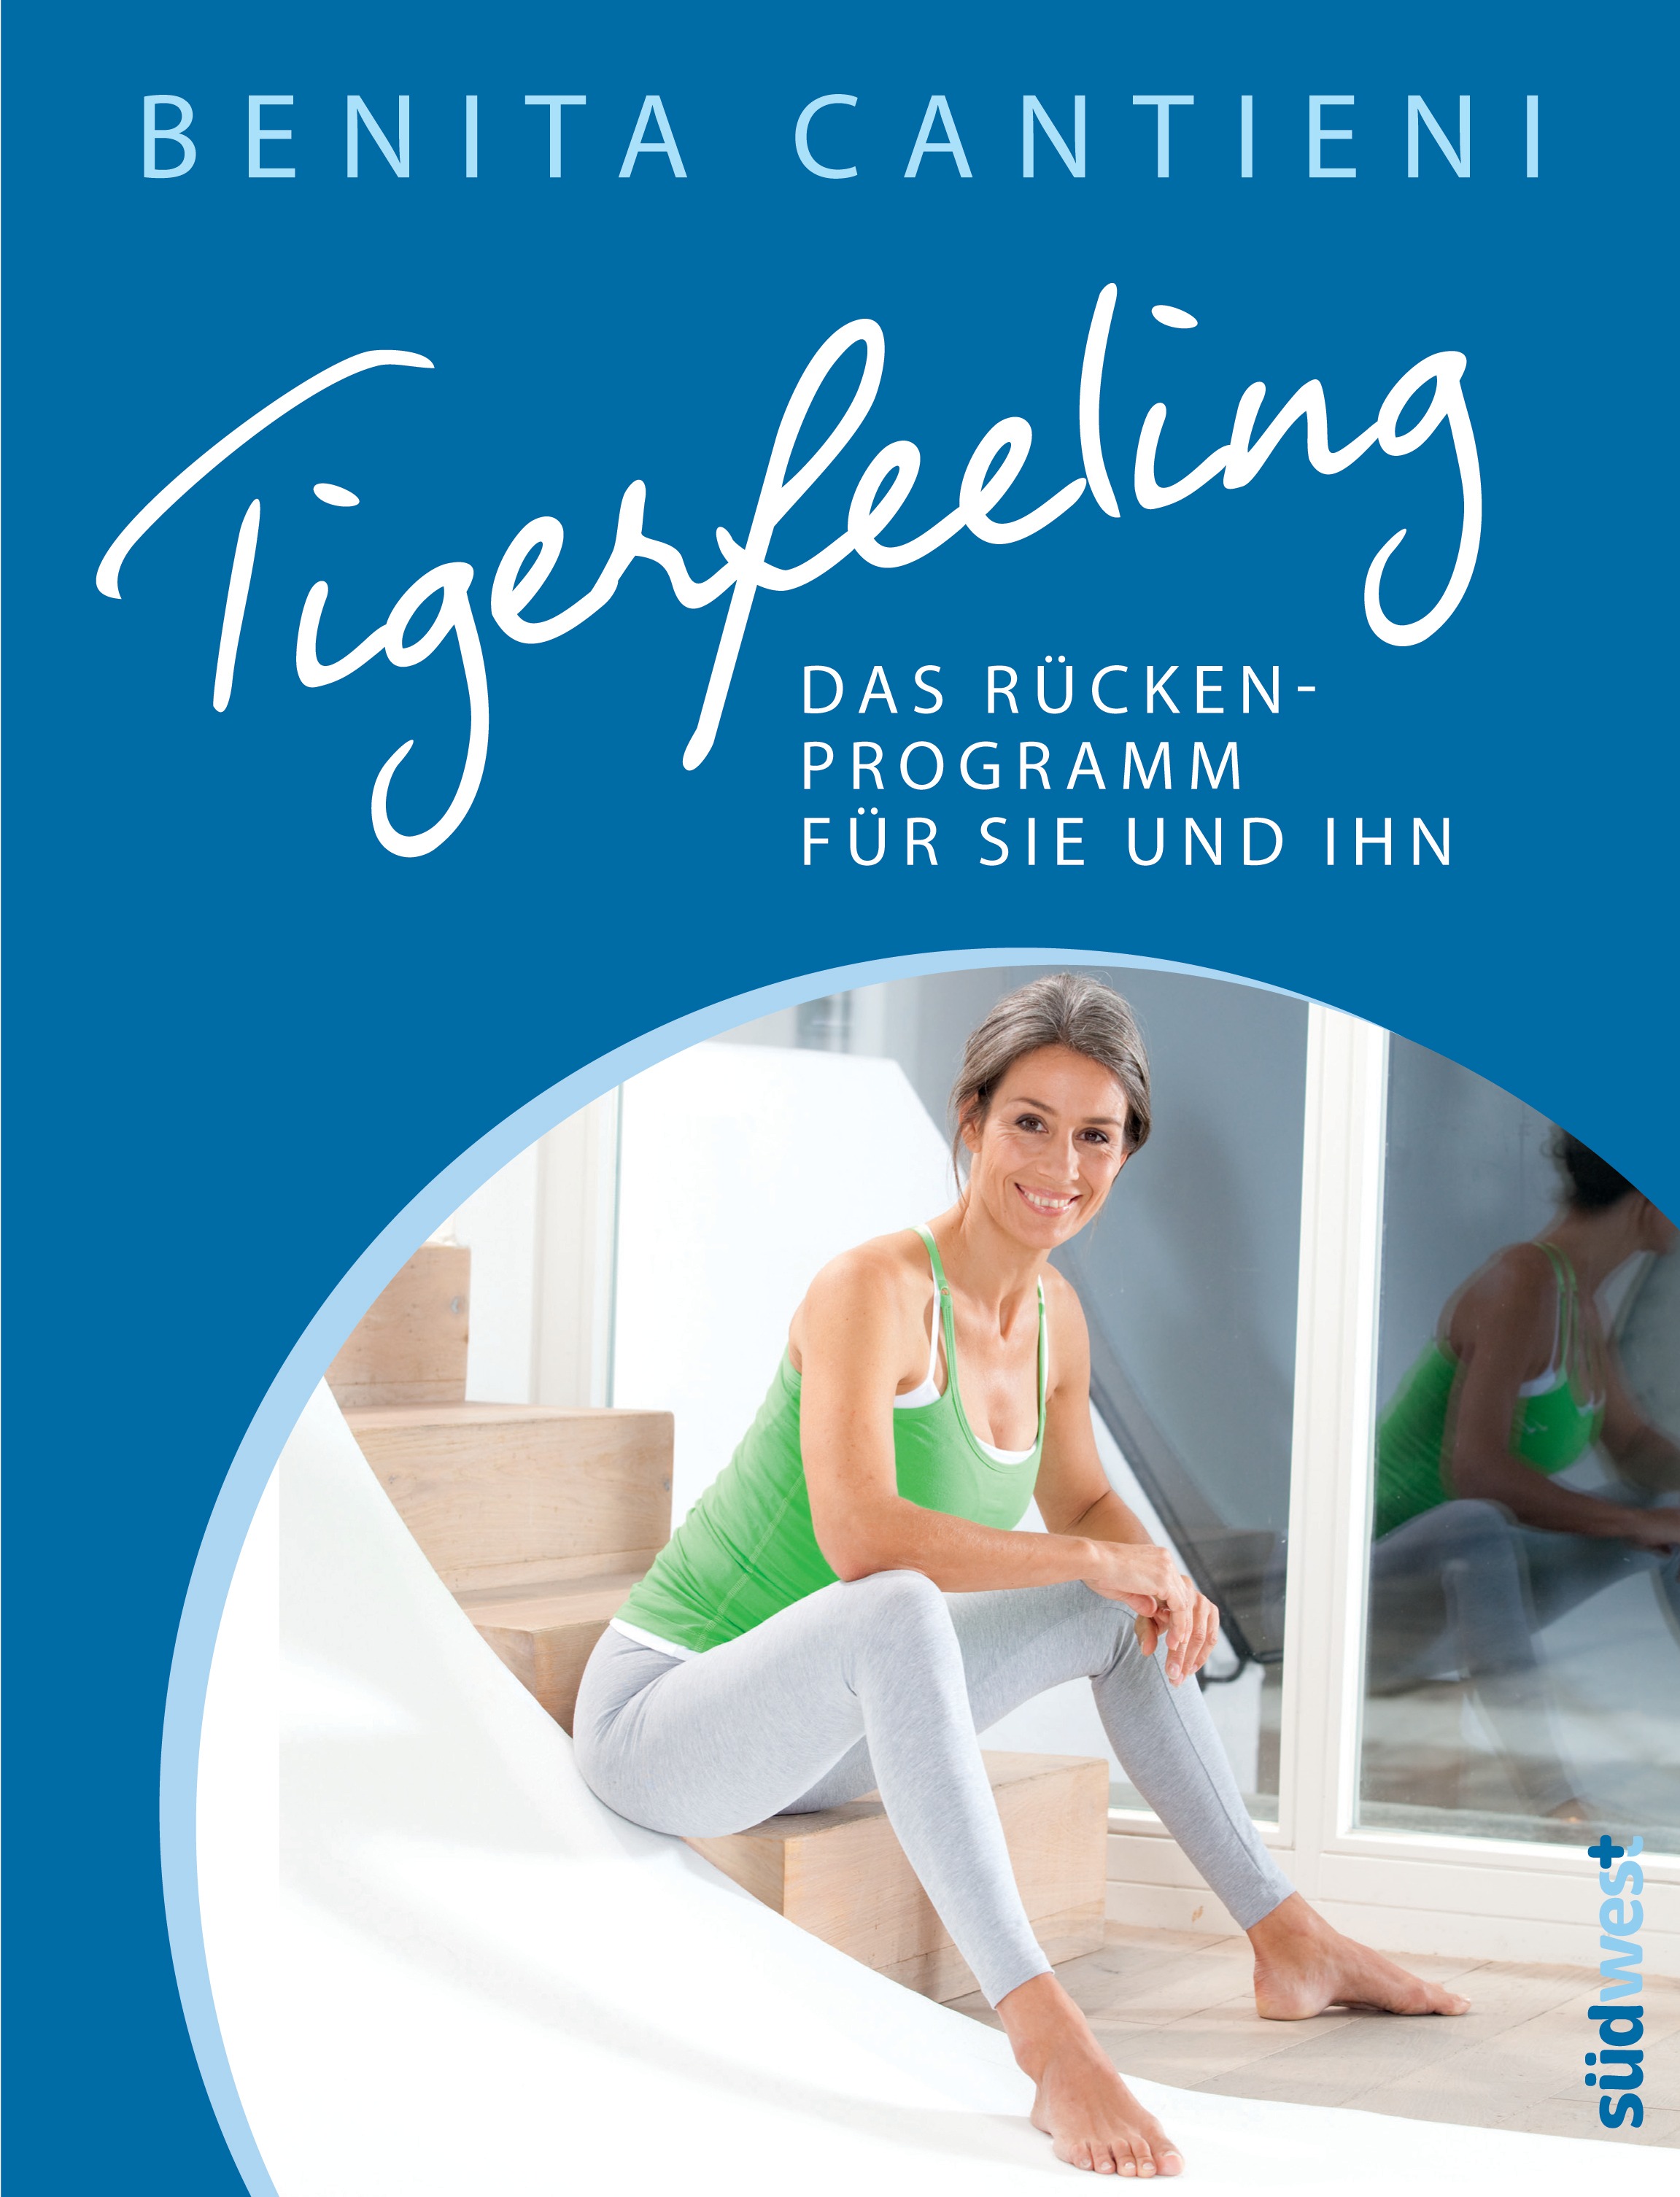 Benita Cantieni / Tigerfeeling: Das Rückenprogramm für sie und ihn - Bild 1 von 1